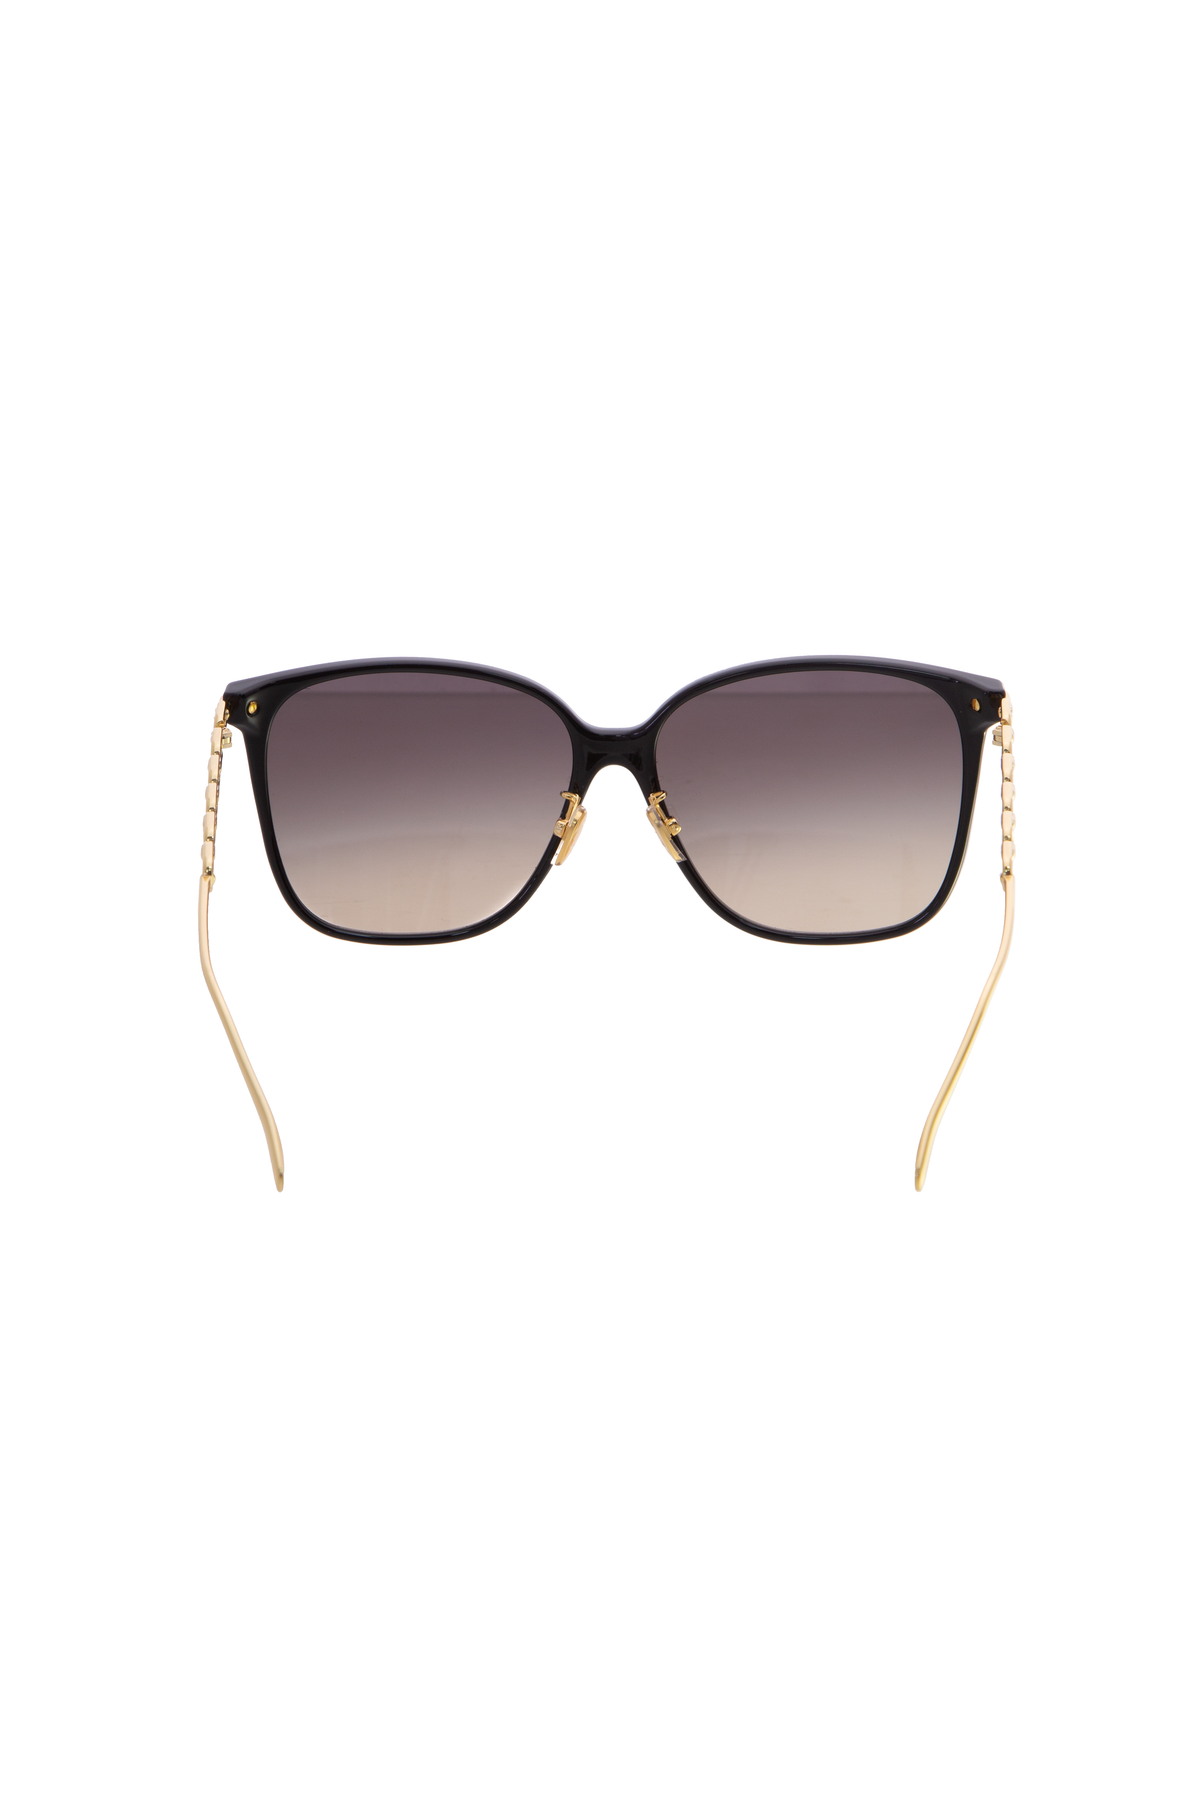 Louis Vuitton My LV Chain Two Classique Square Sunglasses Havana Plastic. Size U